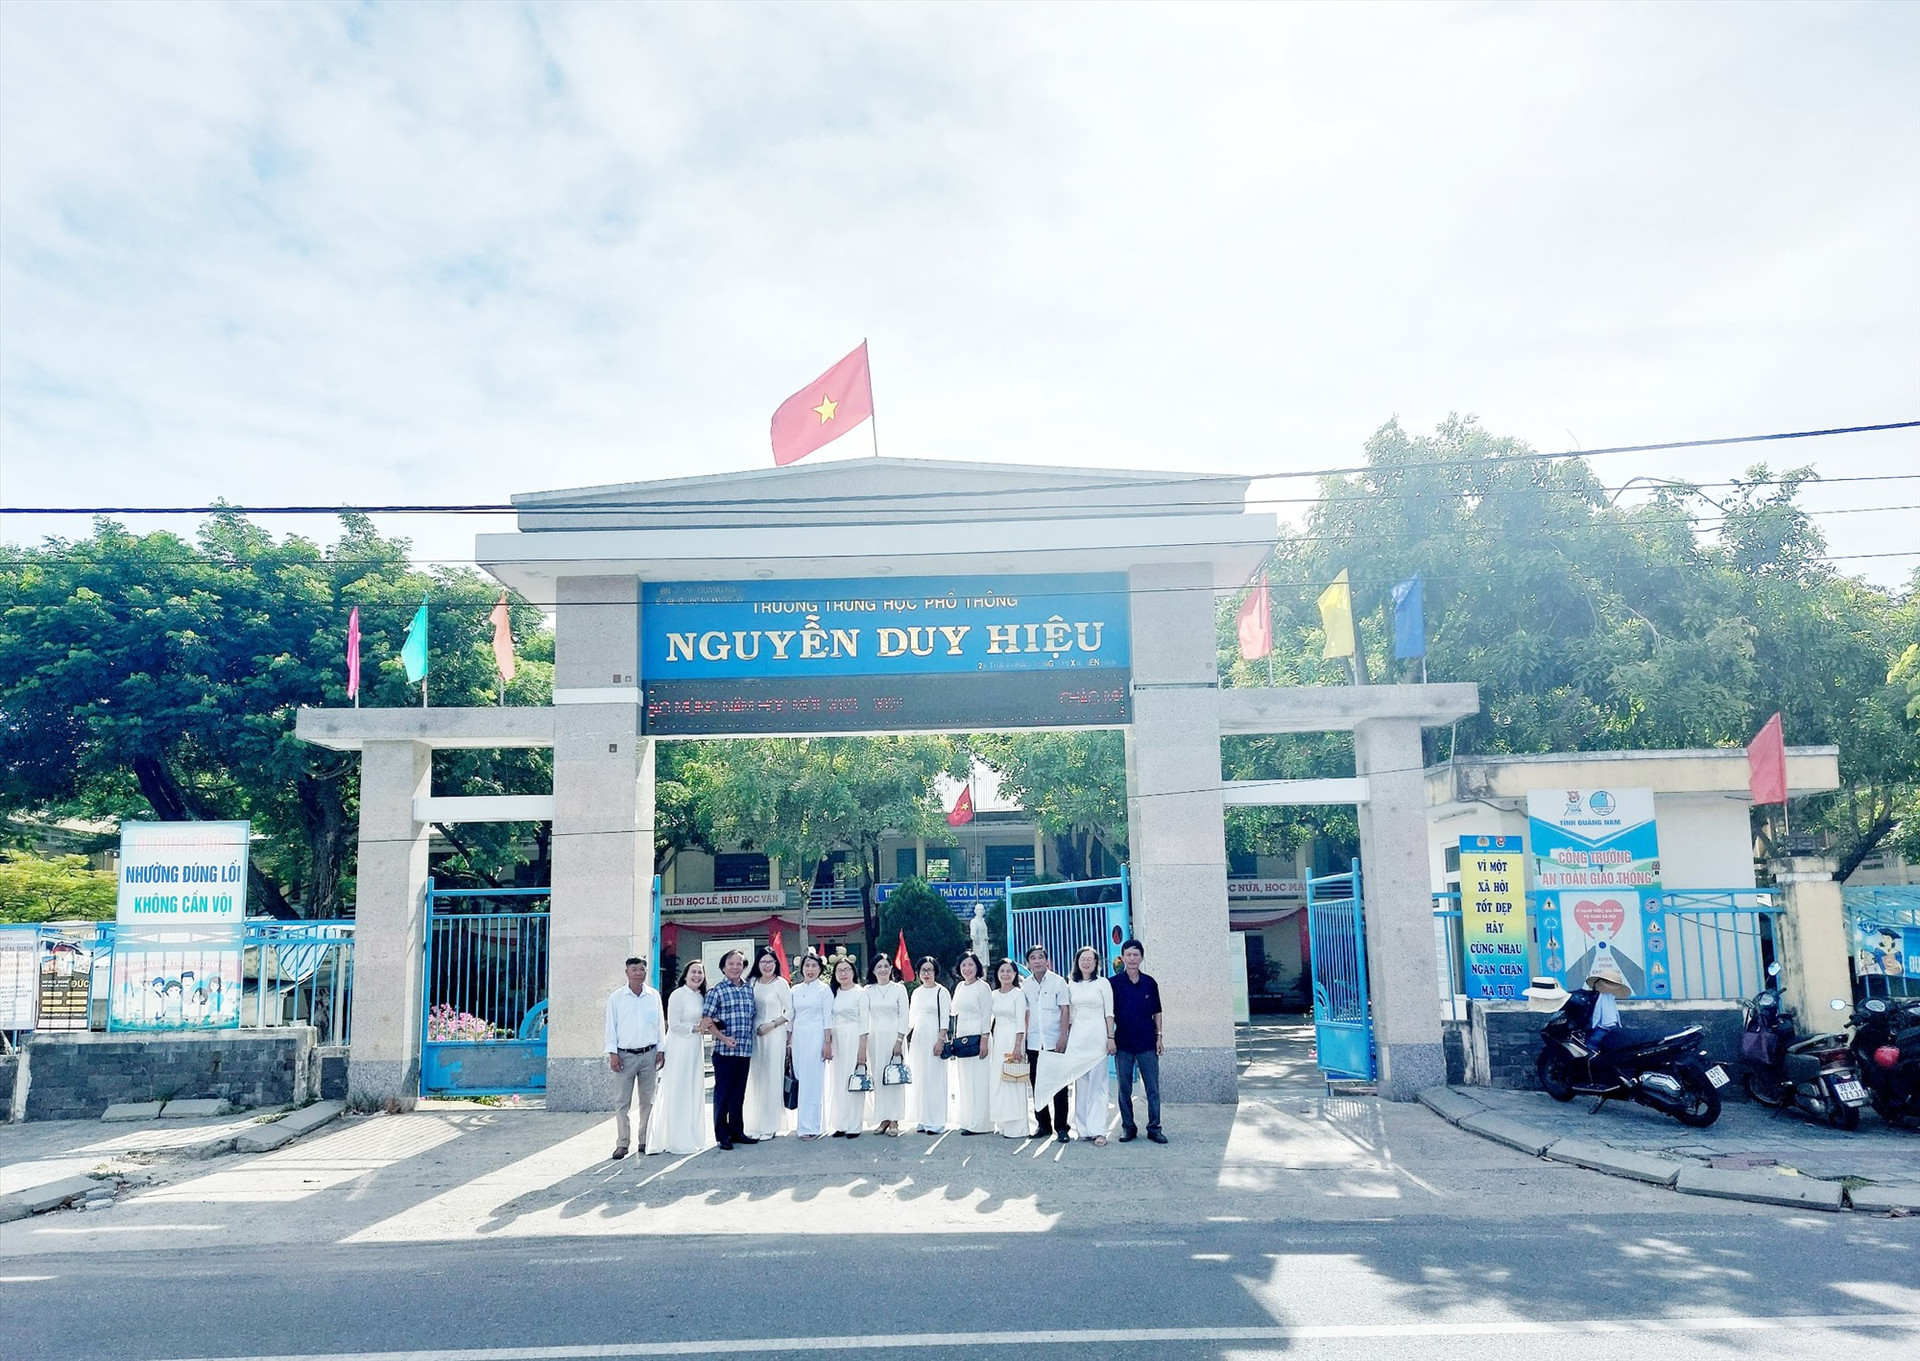 Trường THPT Nguyễn Duy Hiệu. Ảnh: P.N.S